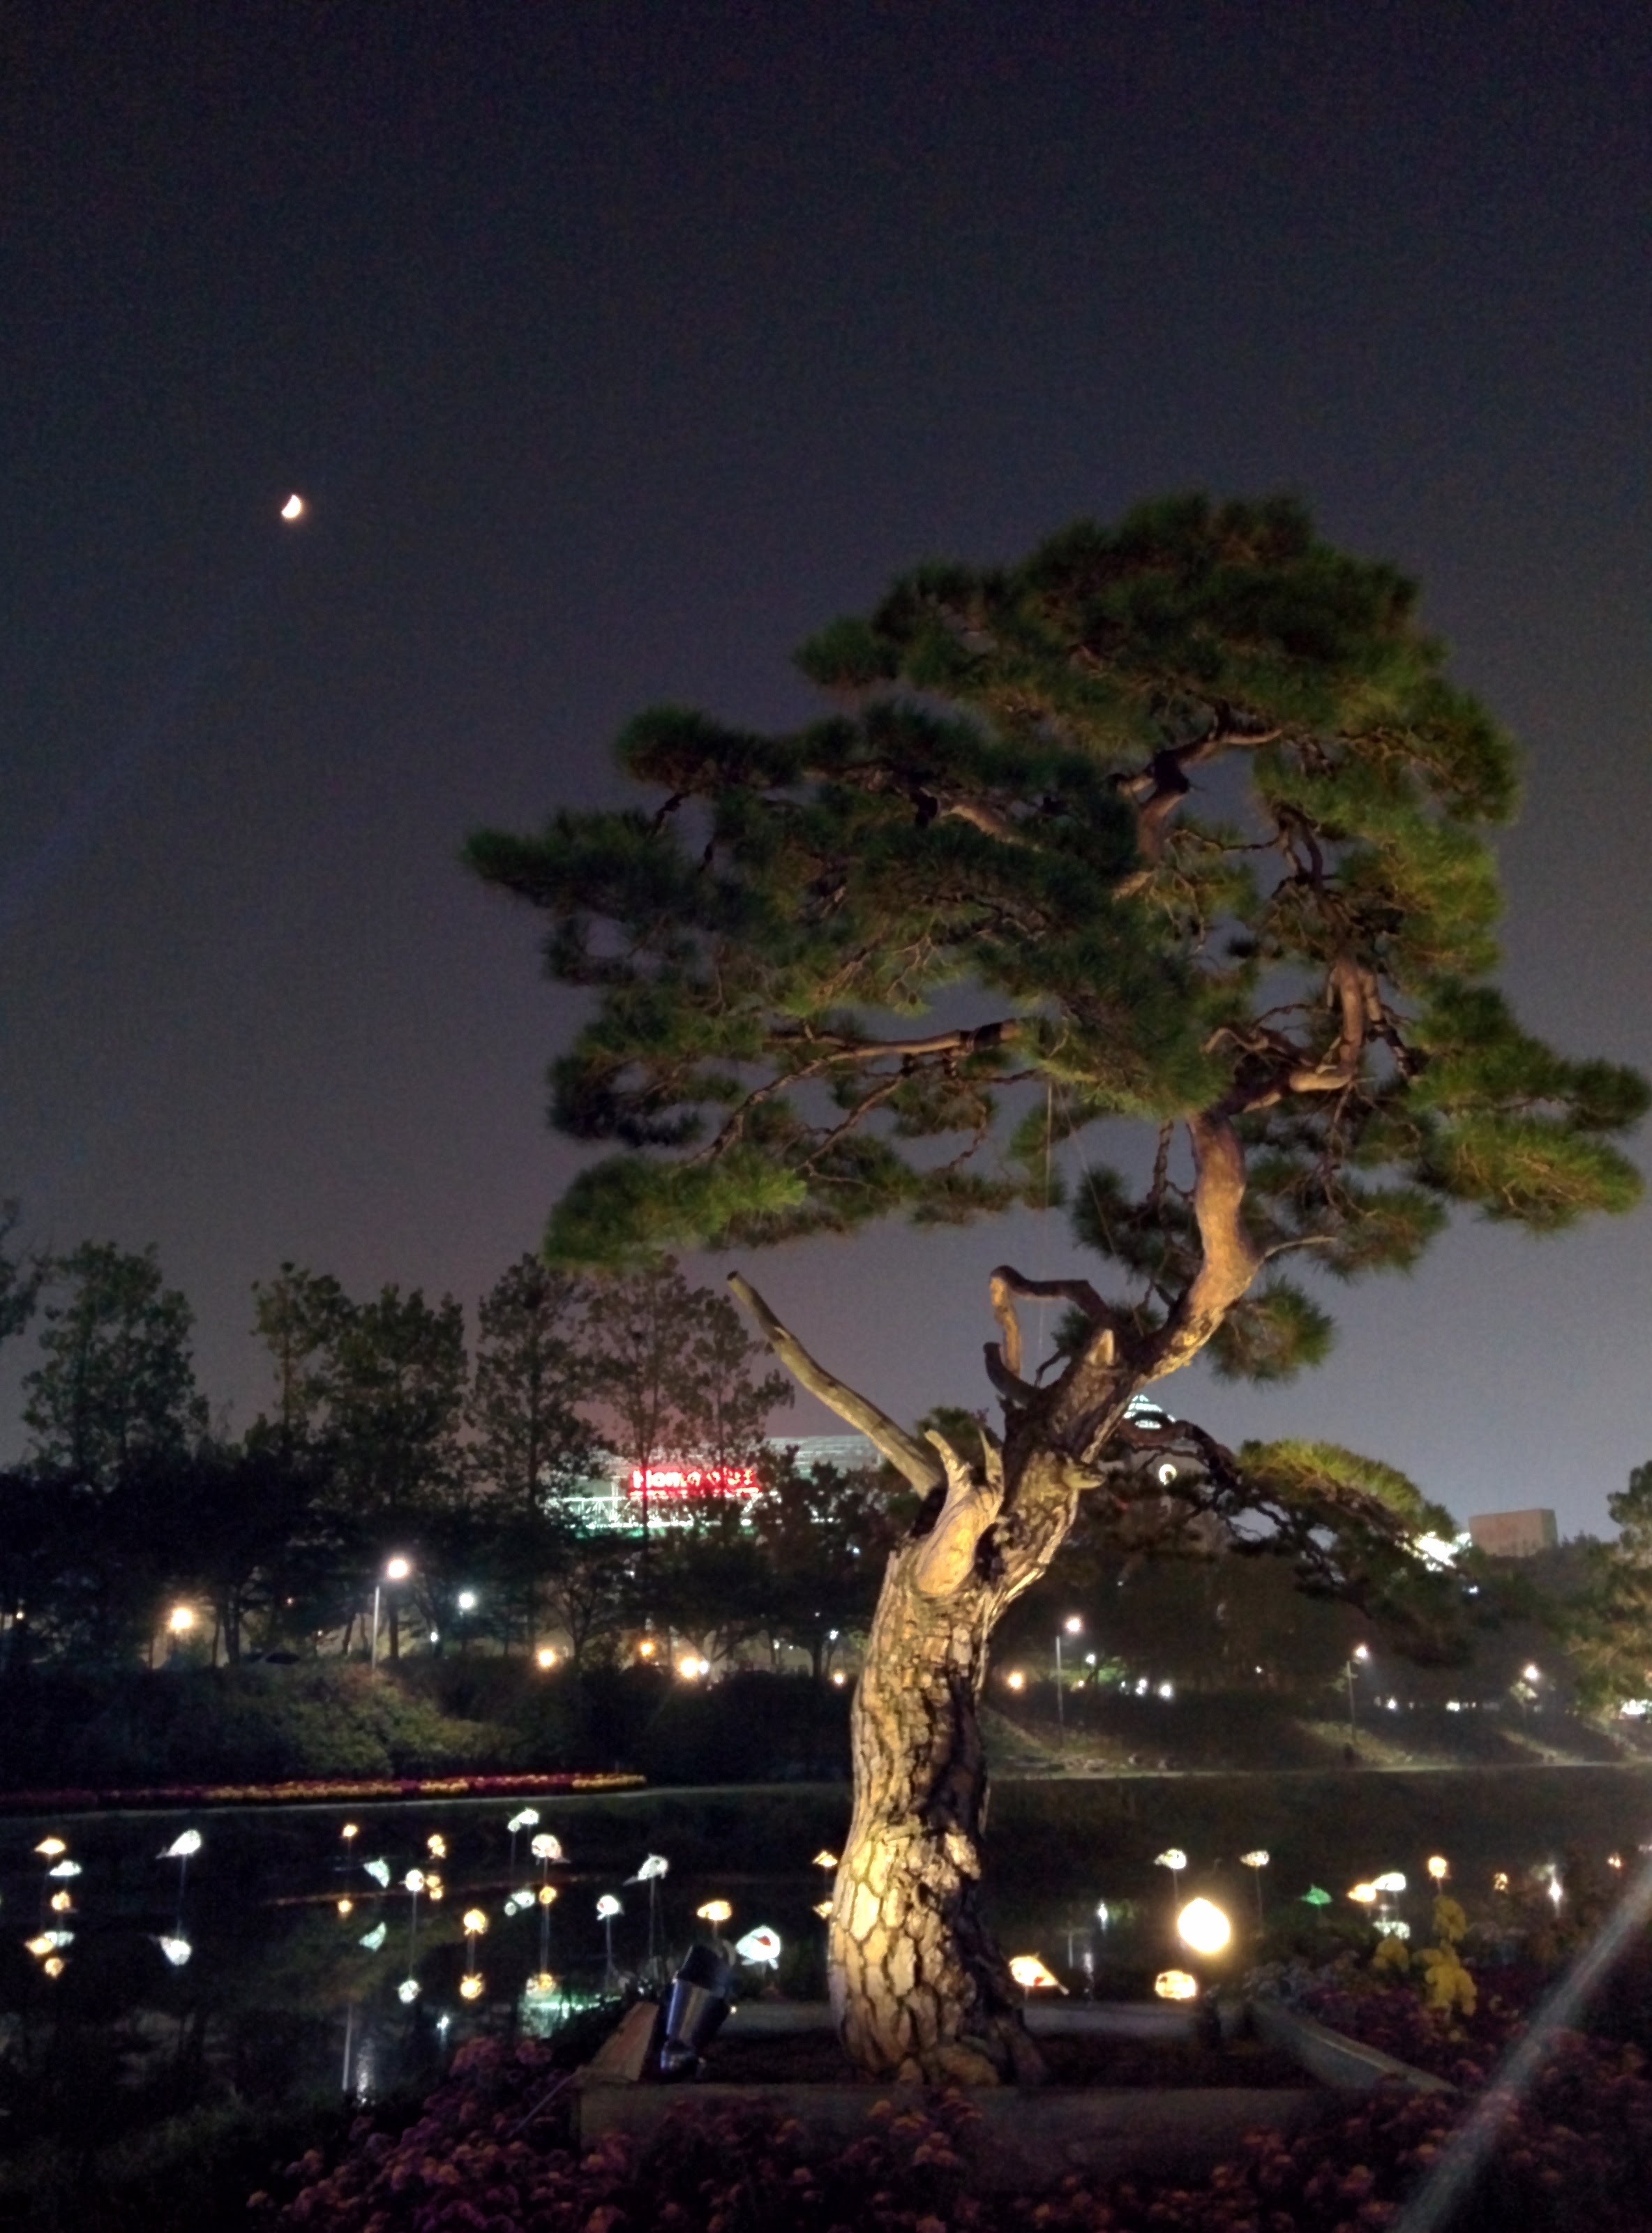 IMG_20151020_191827.jpg 유성국화전시회 야경, 달과 소나무